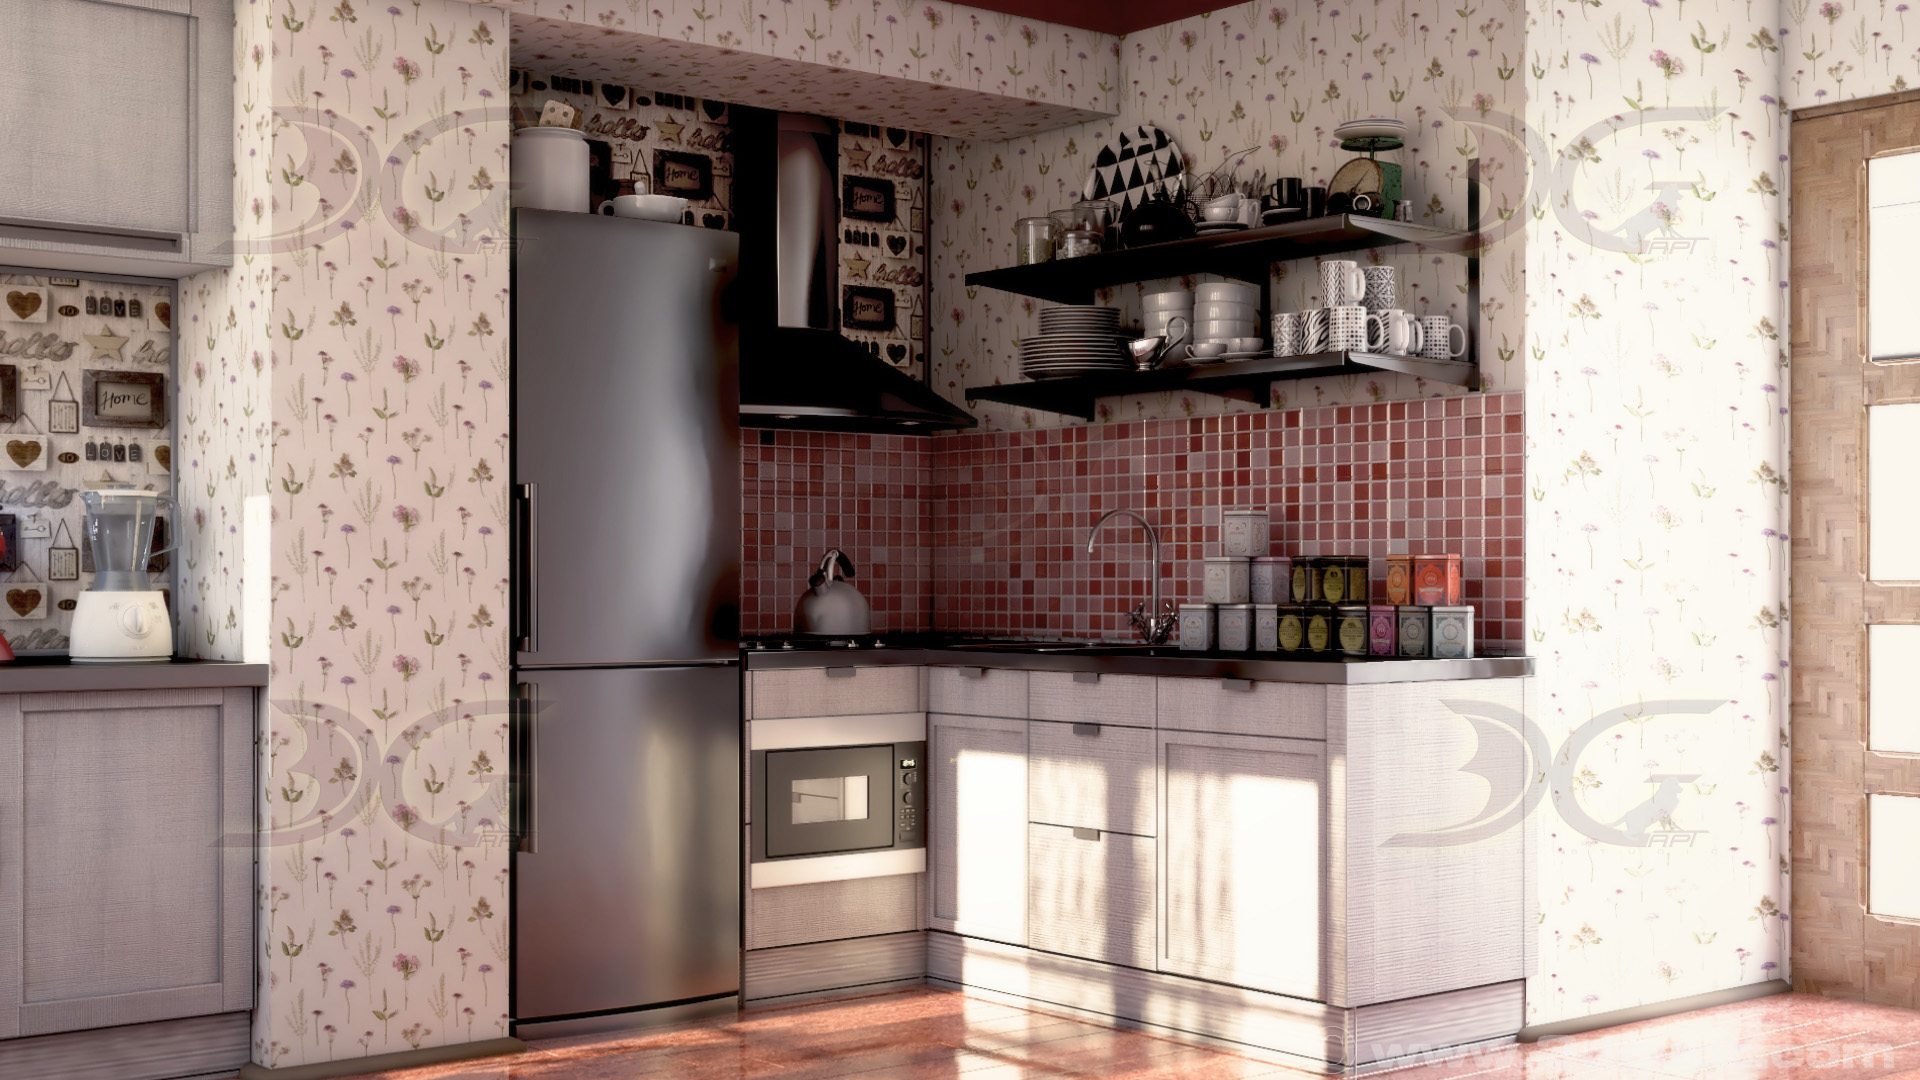 architecture interior kitchen-2versions 003